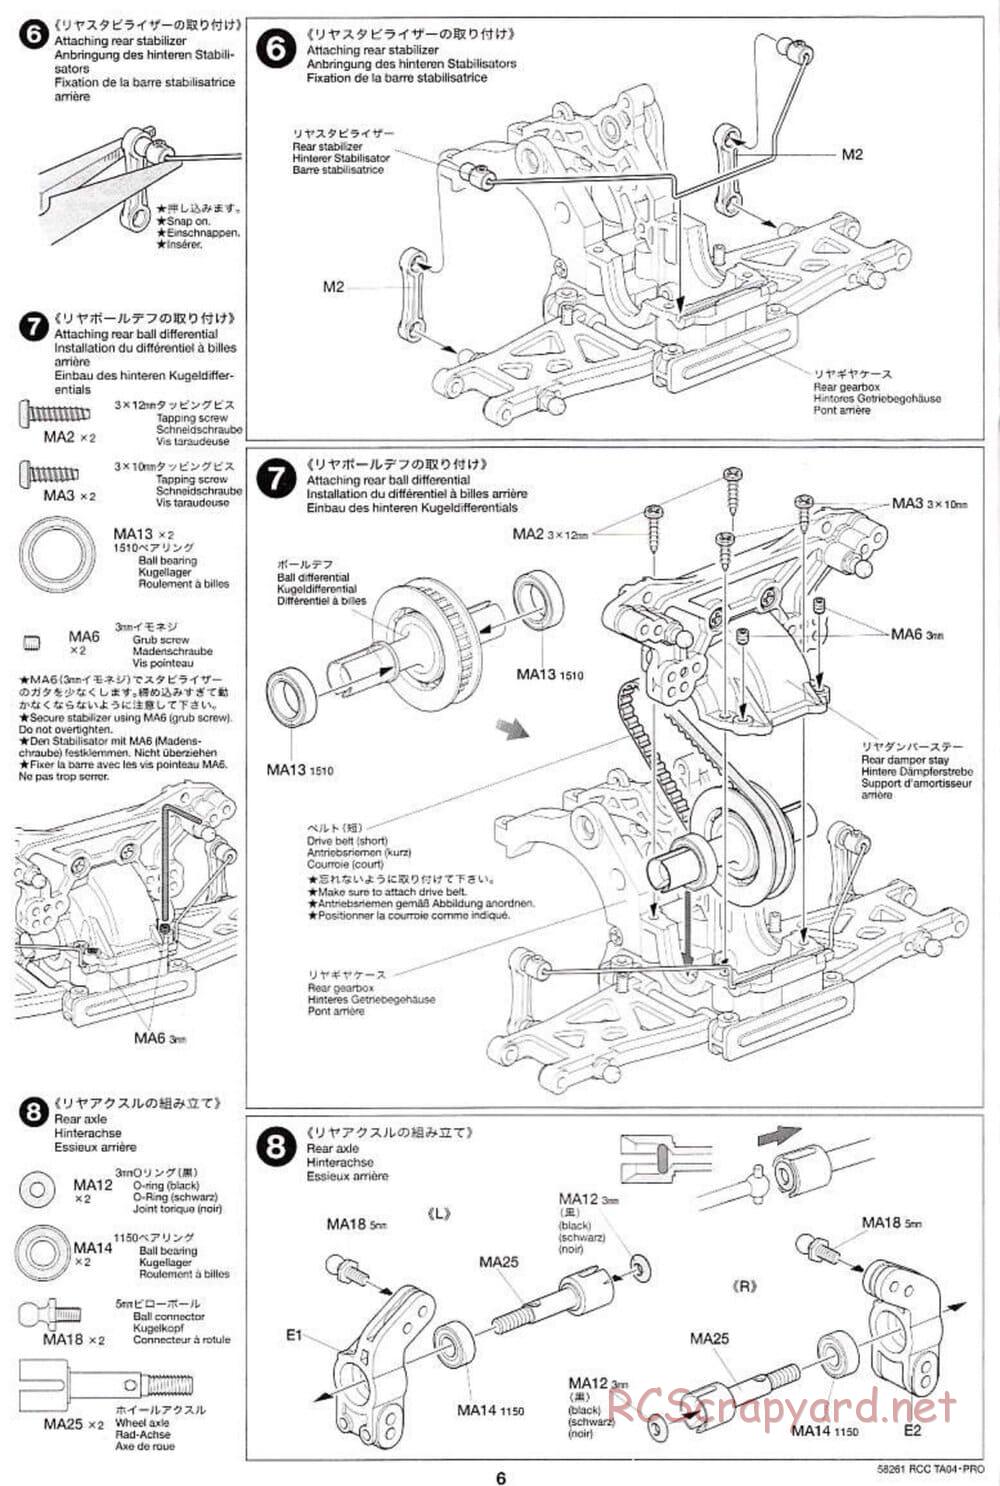 Tamiya - TA-04 Pro Chassis - Manual - Page 6